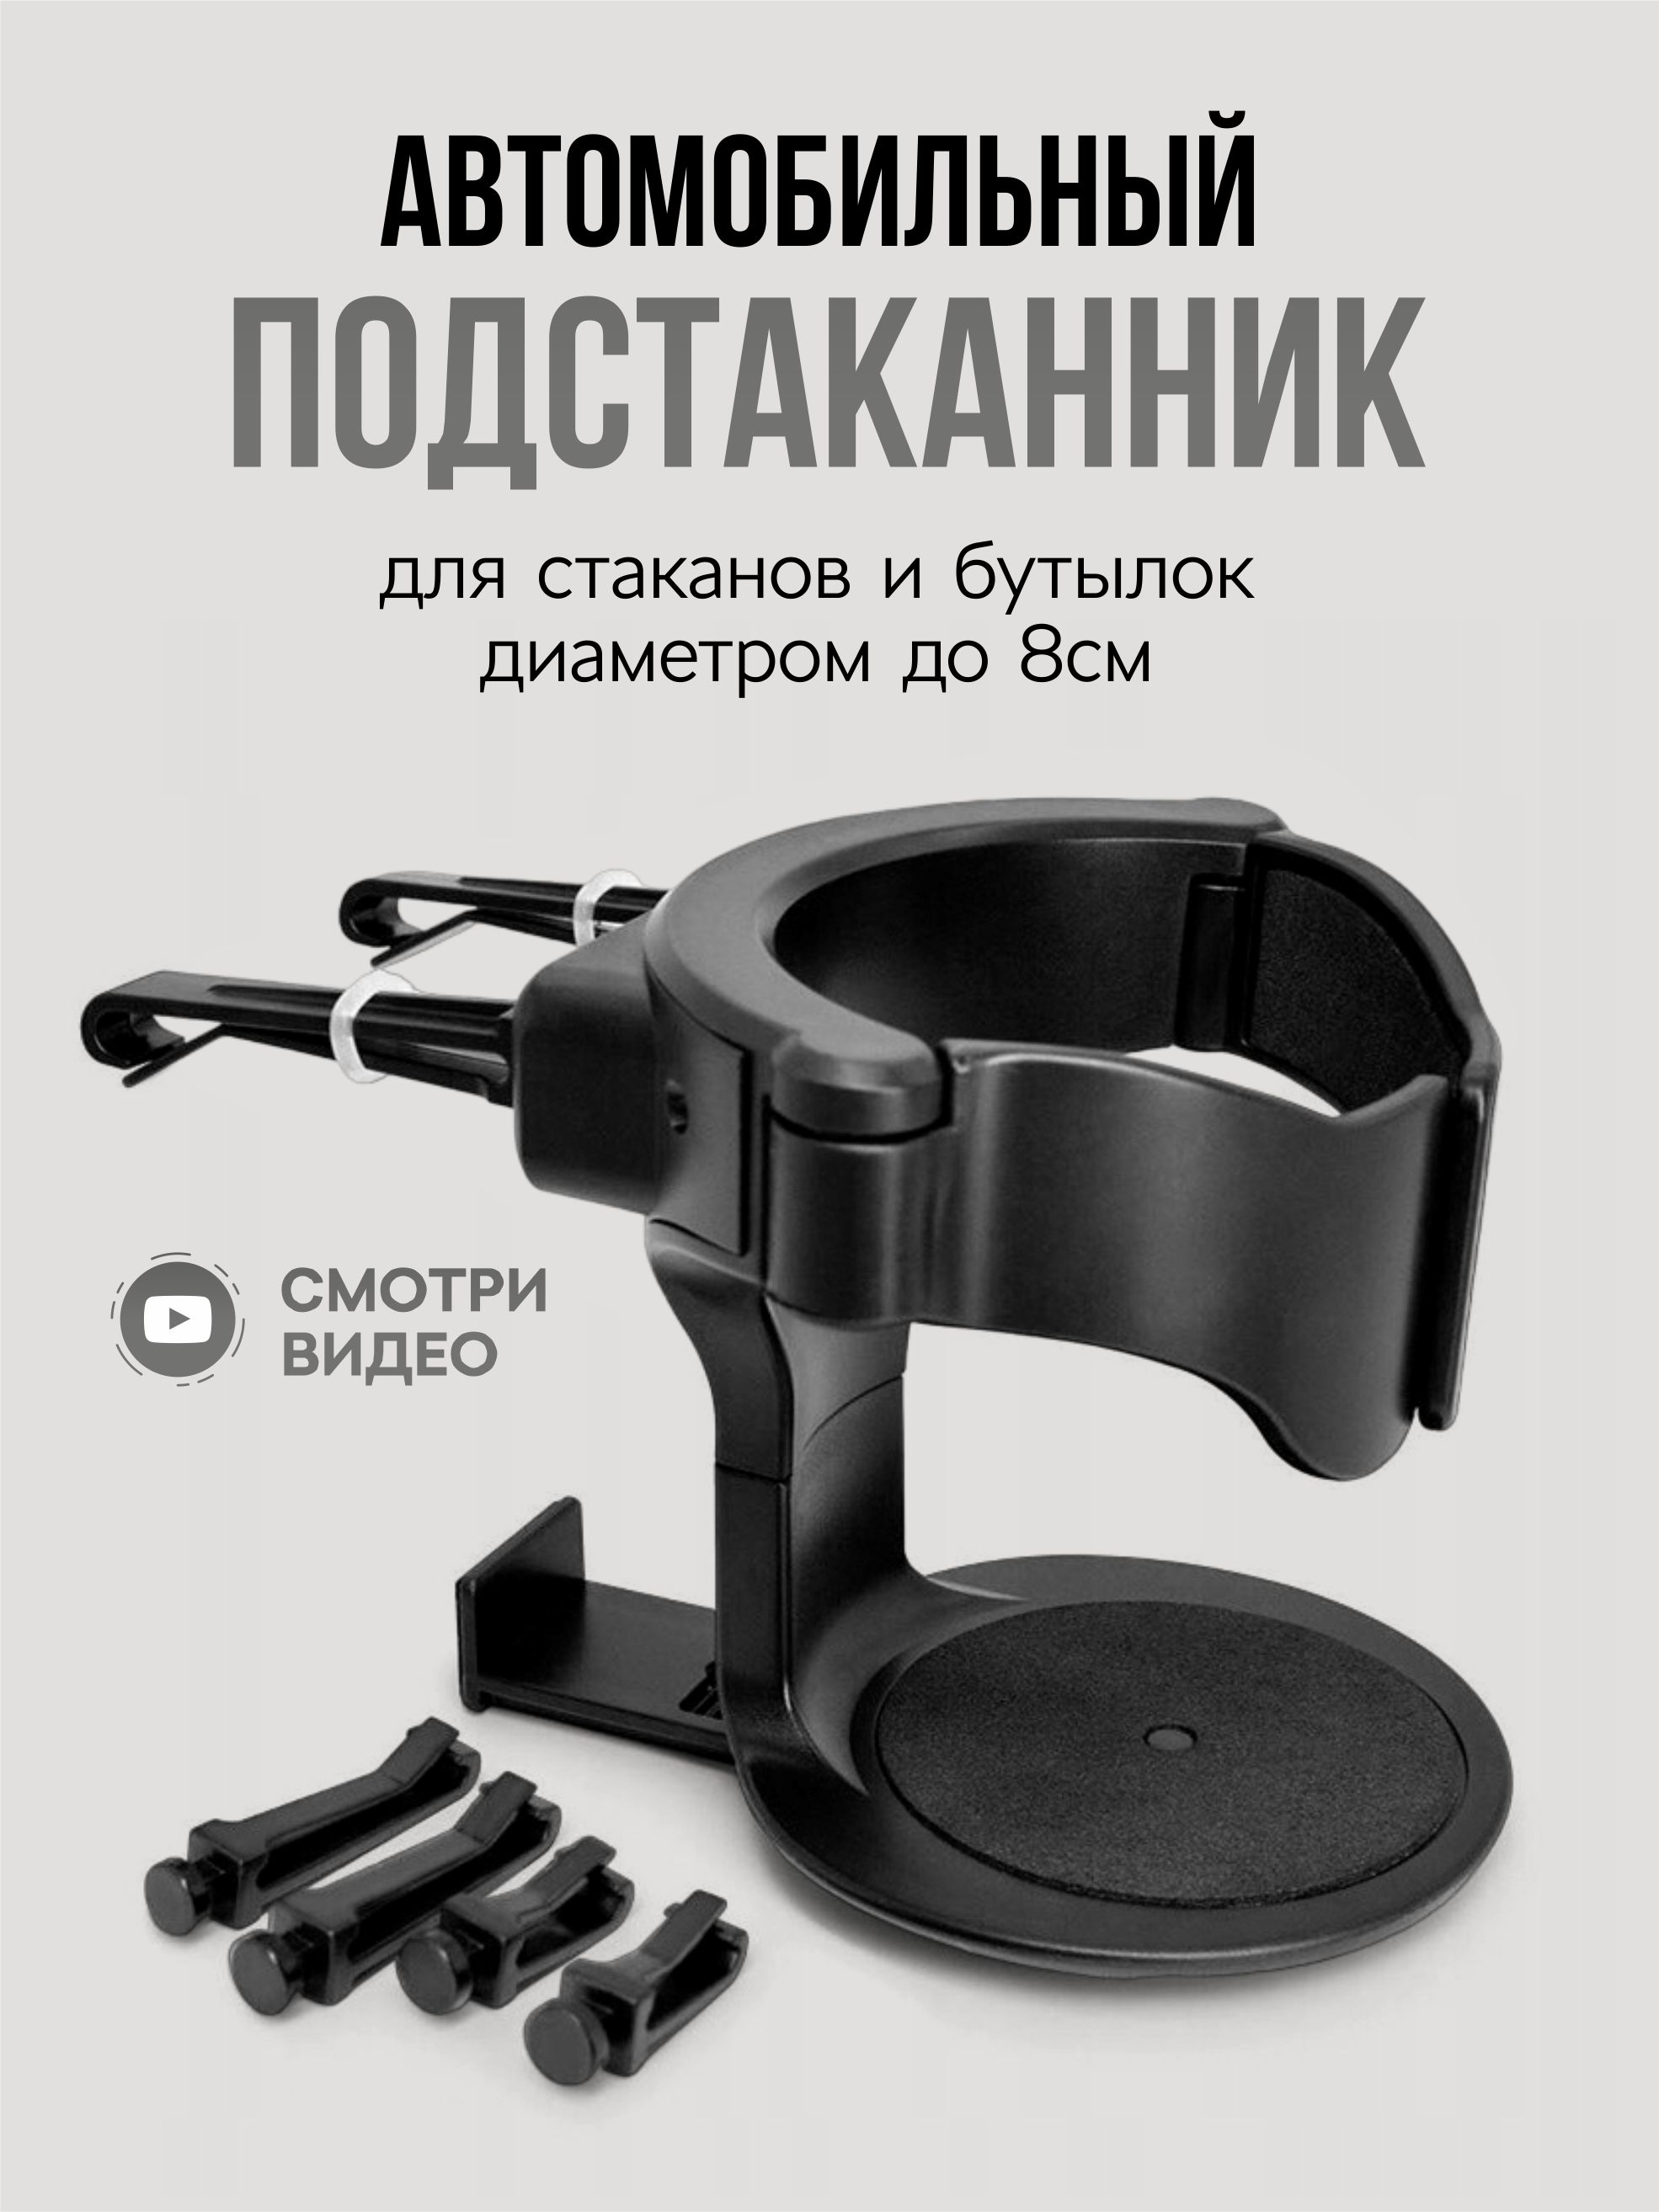 SHOPFORCARS — Интернет-магазин Автотоваров в Украине